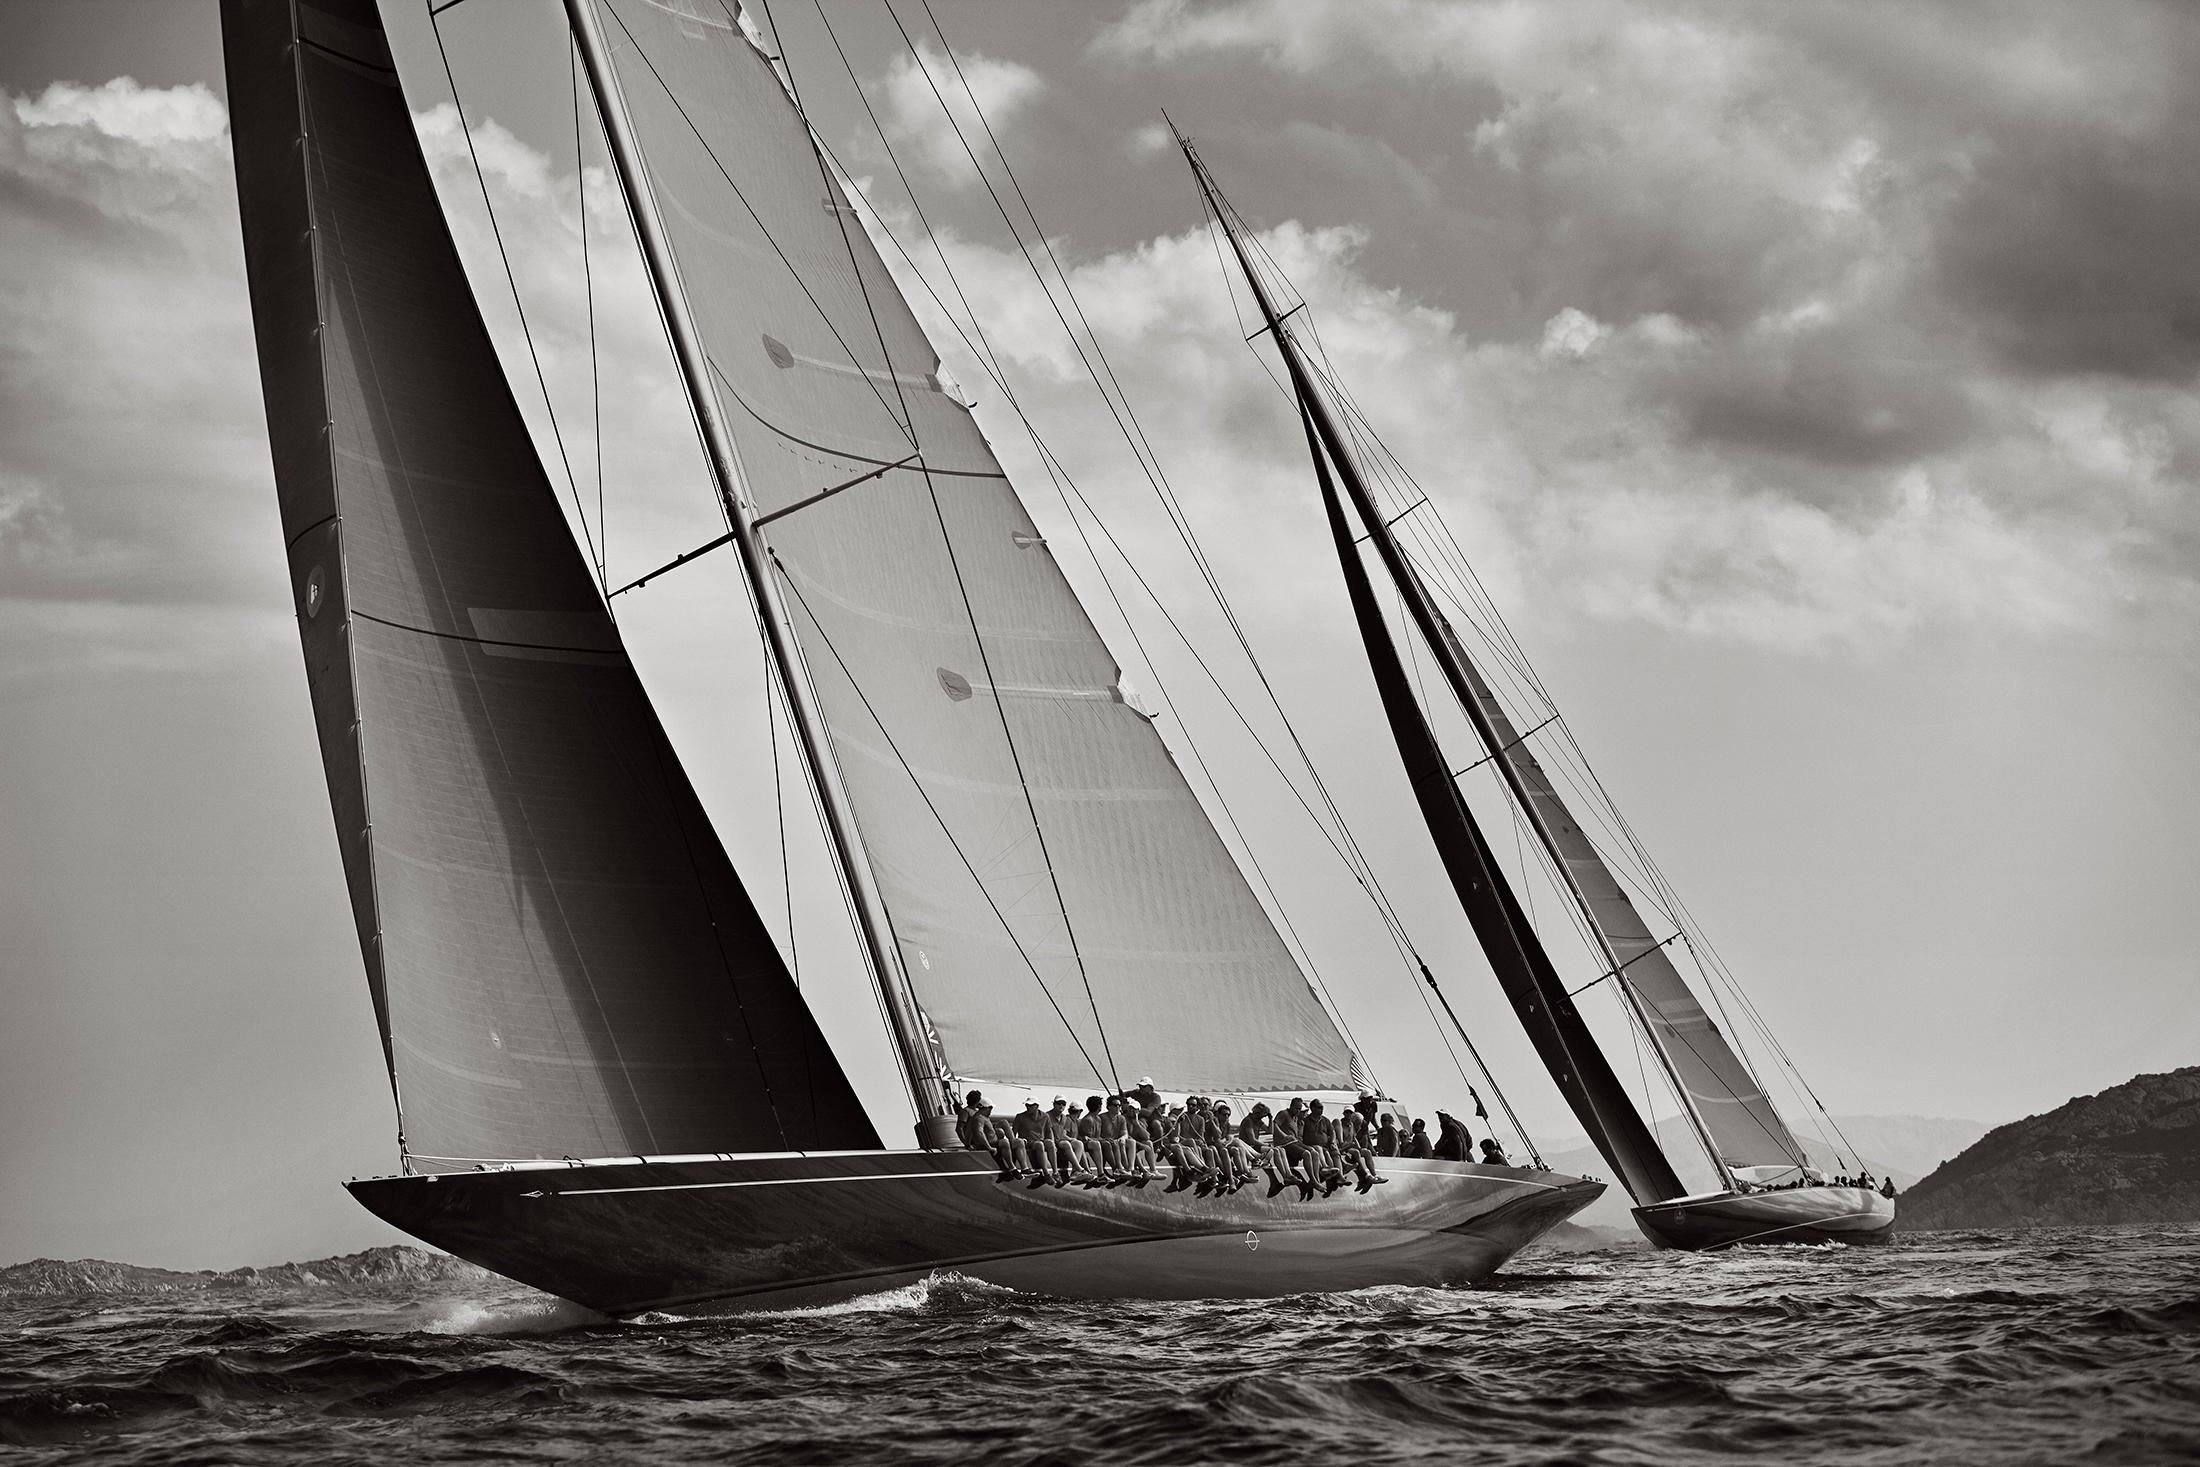 Drew Doggett Black and White Photograph – Weltklasse-Rennenjachten in Italien, nautisch, horizontal, ikonisch